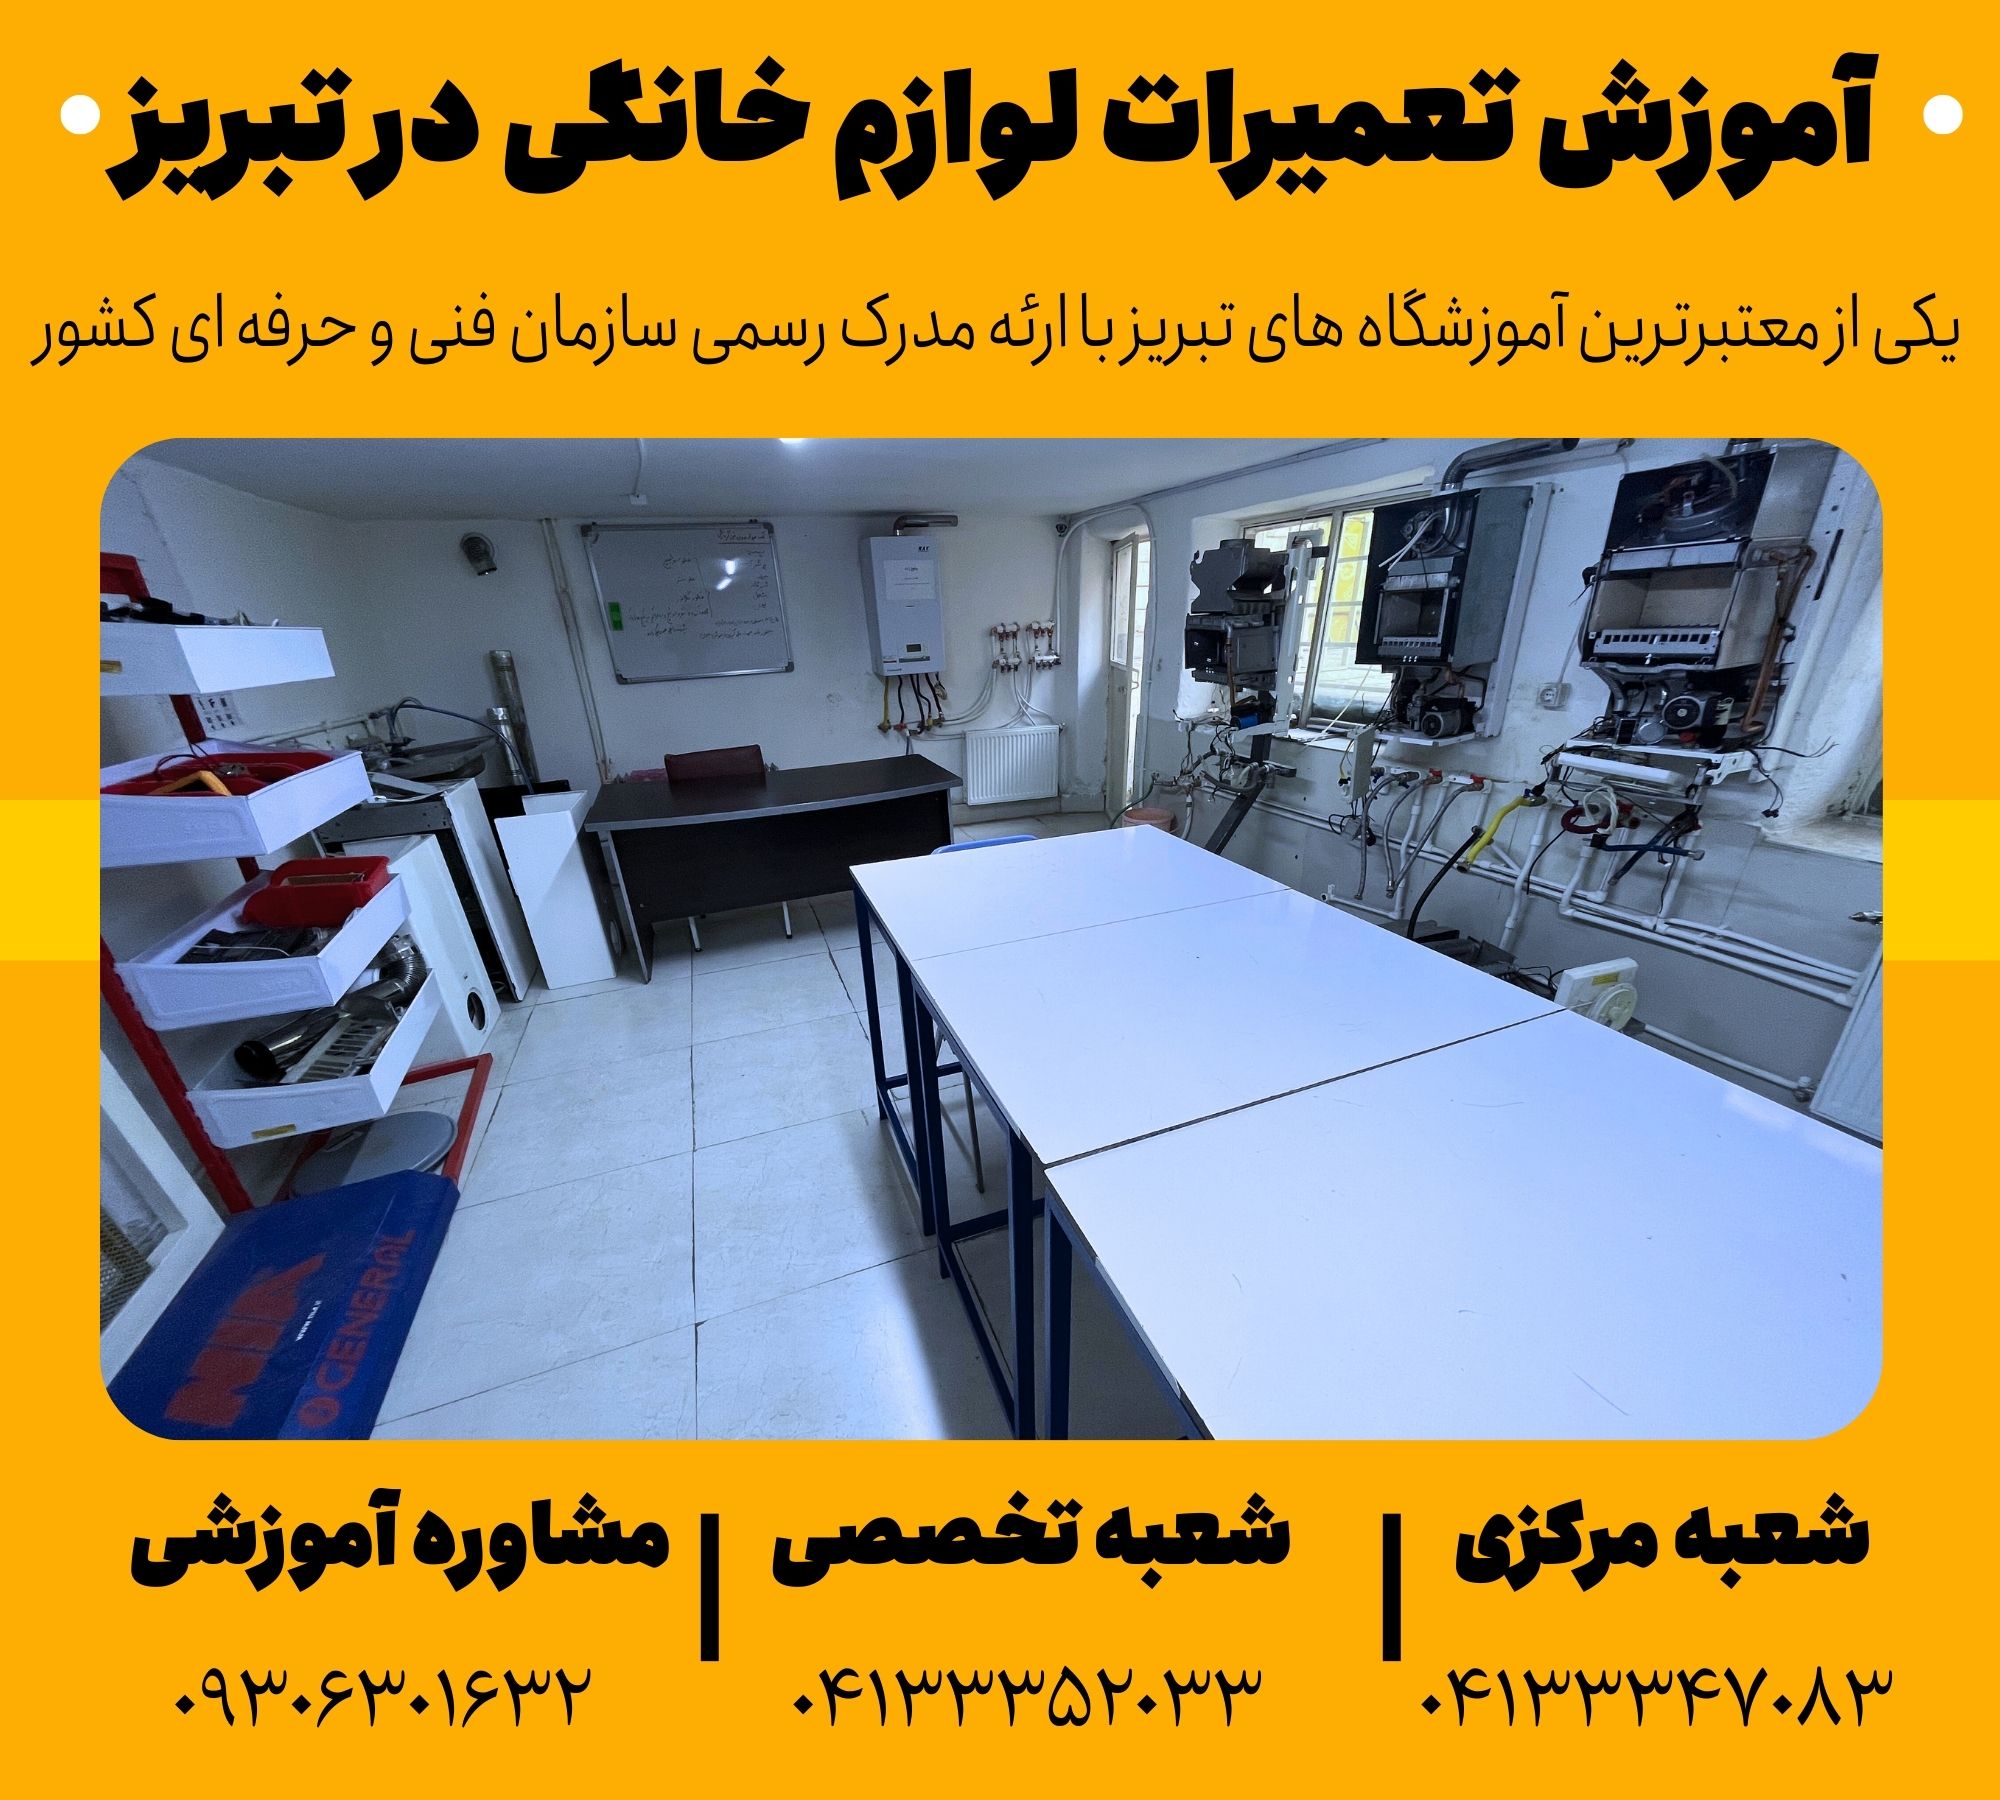 آموزش تعمیرات لوازم خانگی در تبریز